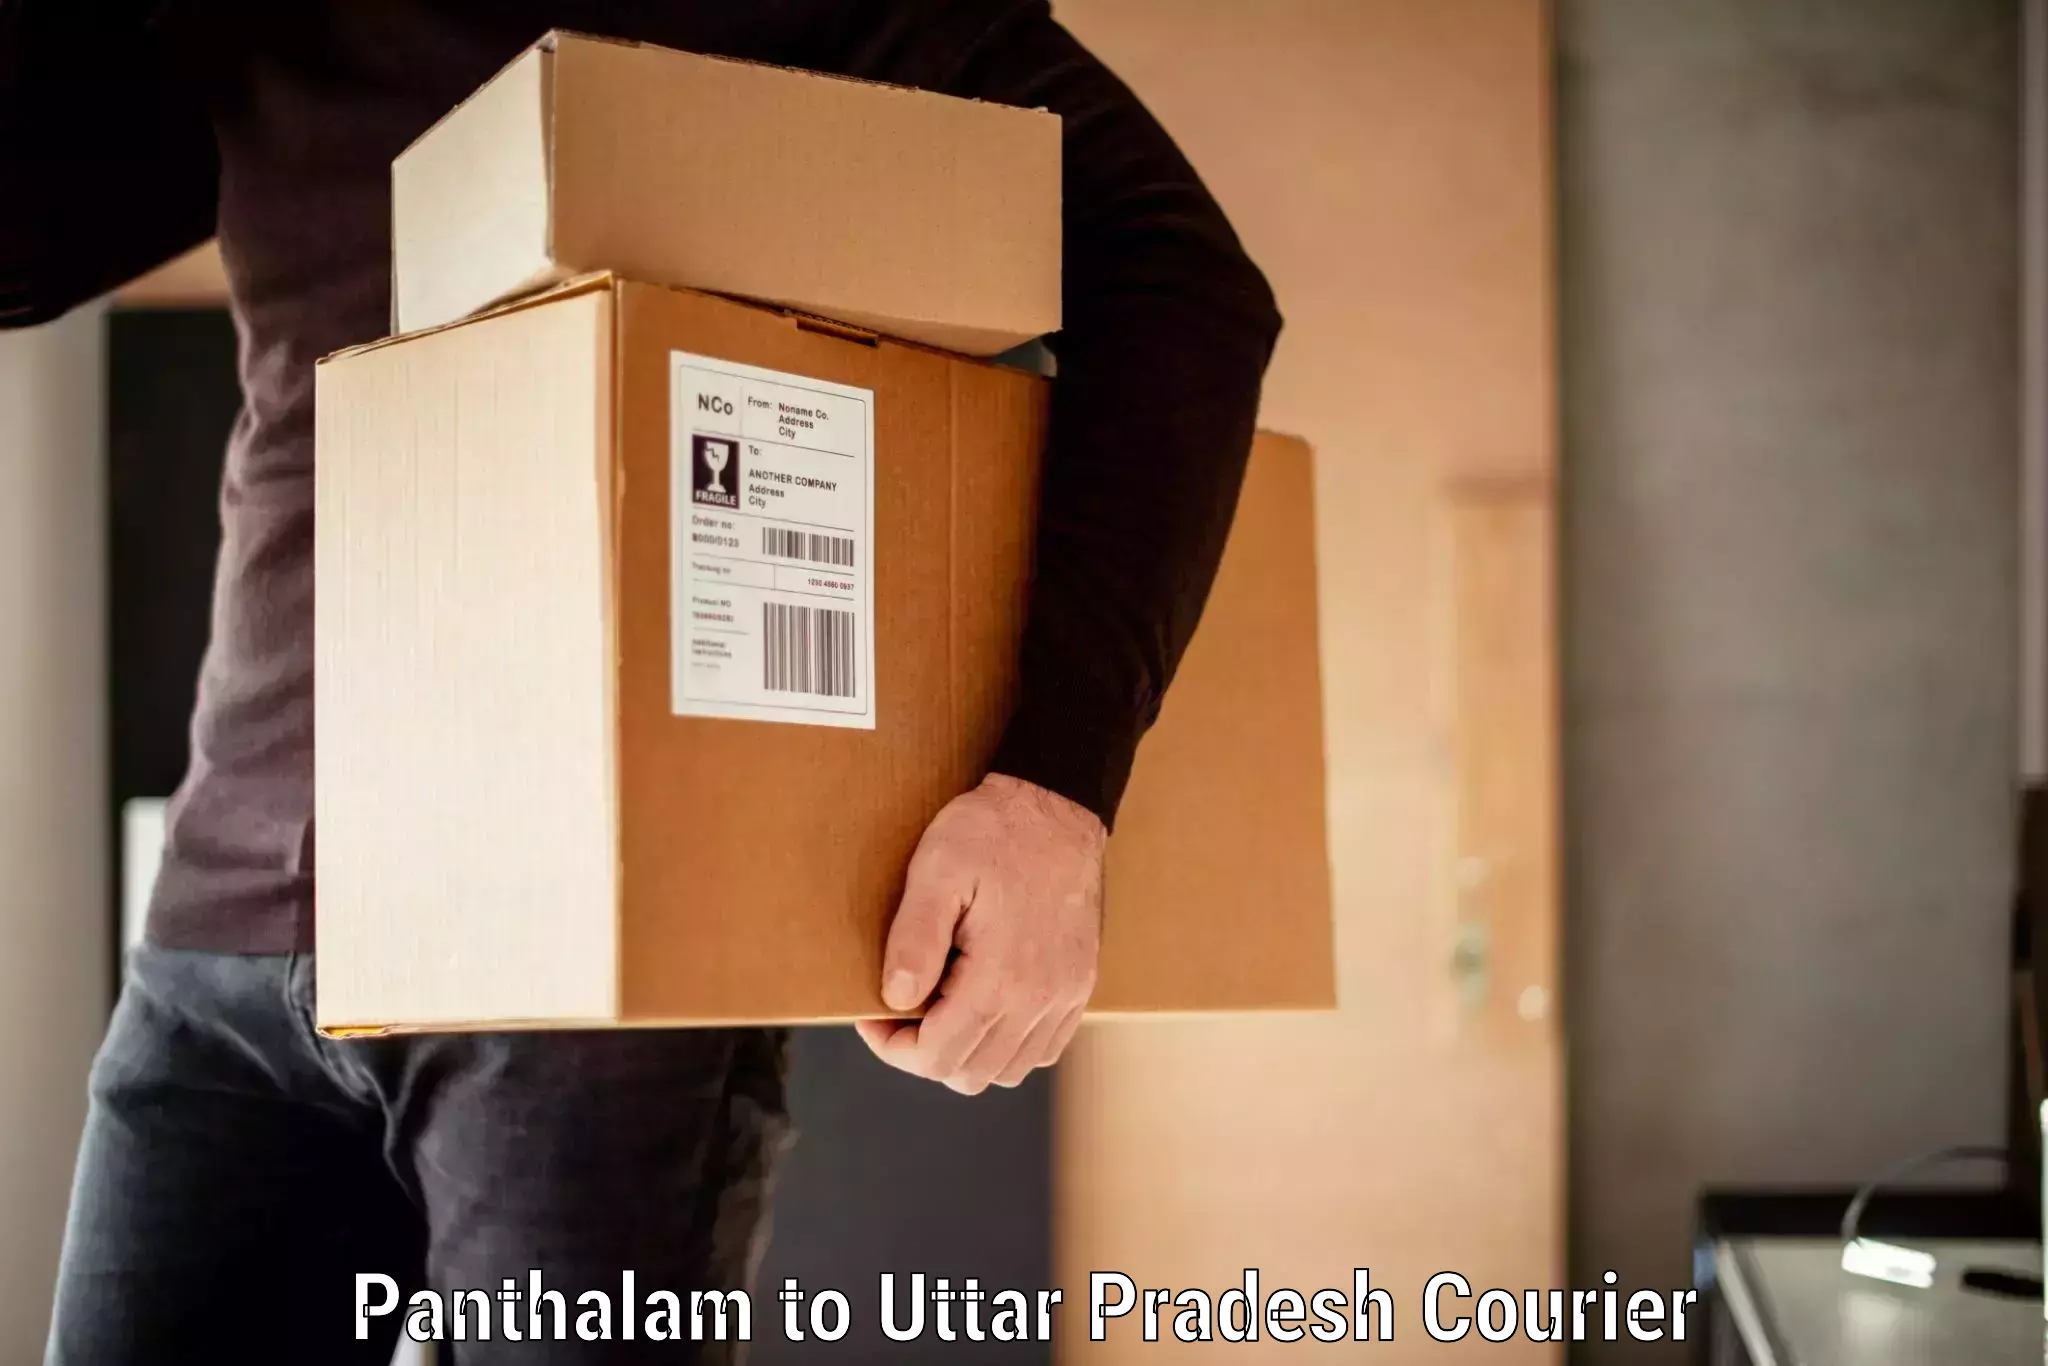 Baggage relocation service Panthalam to Dadri